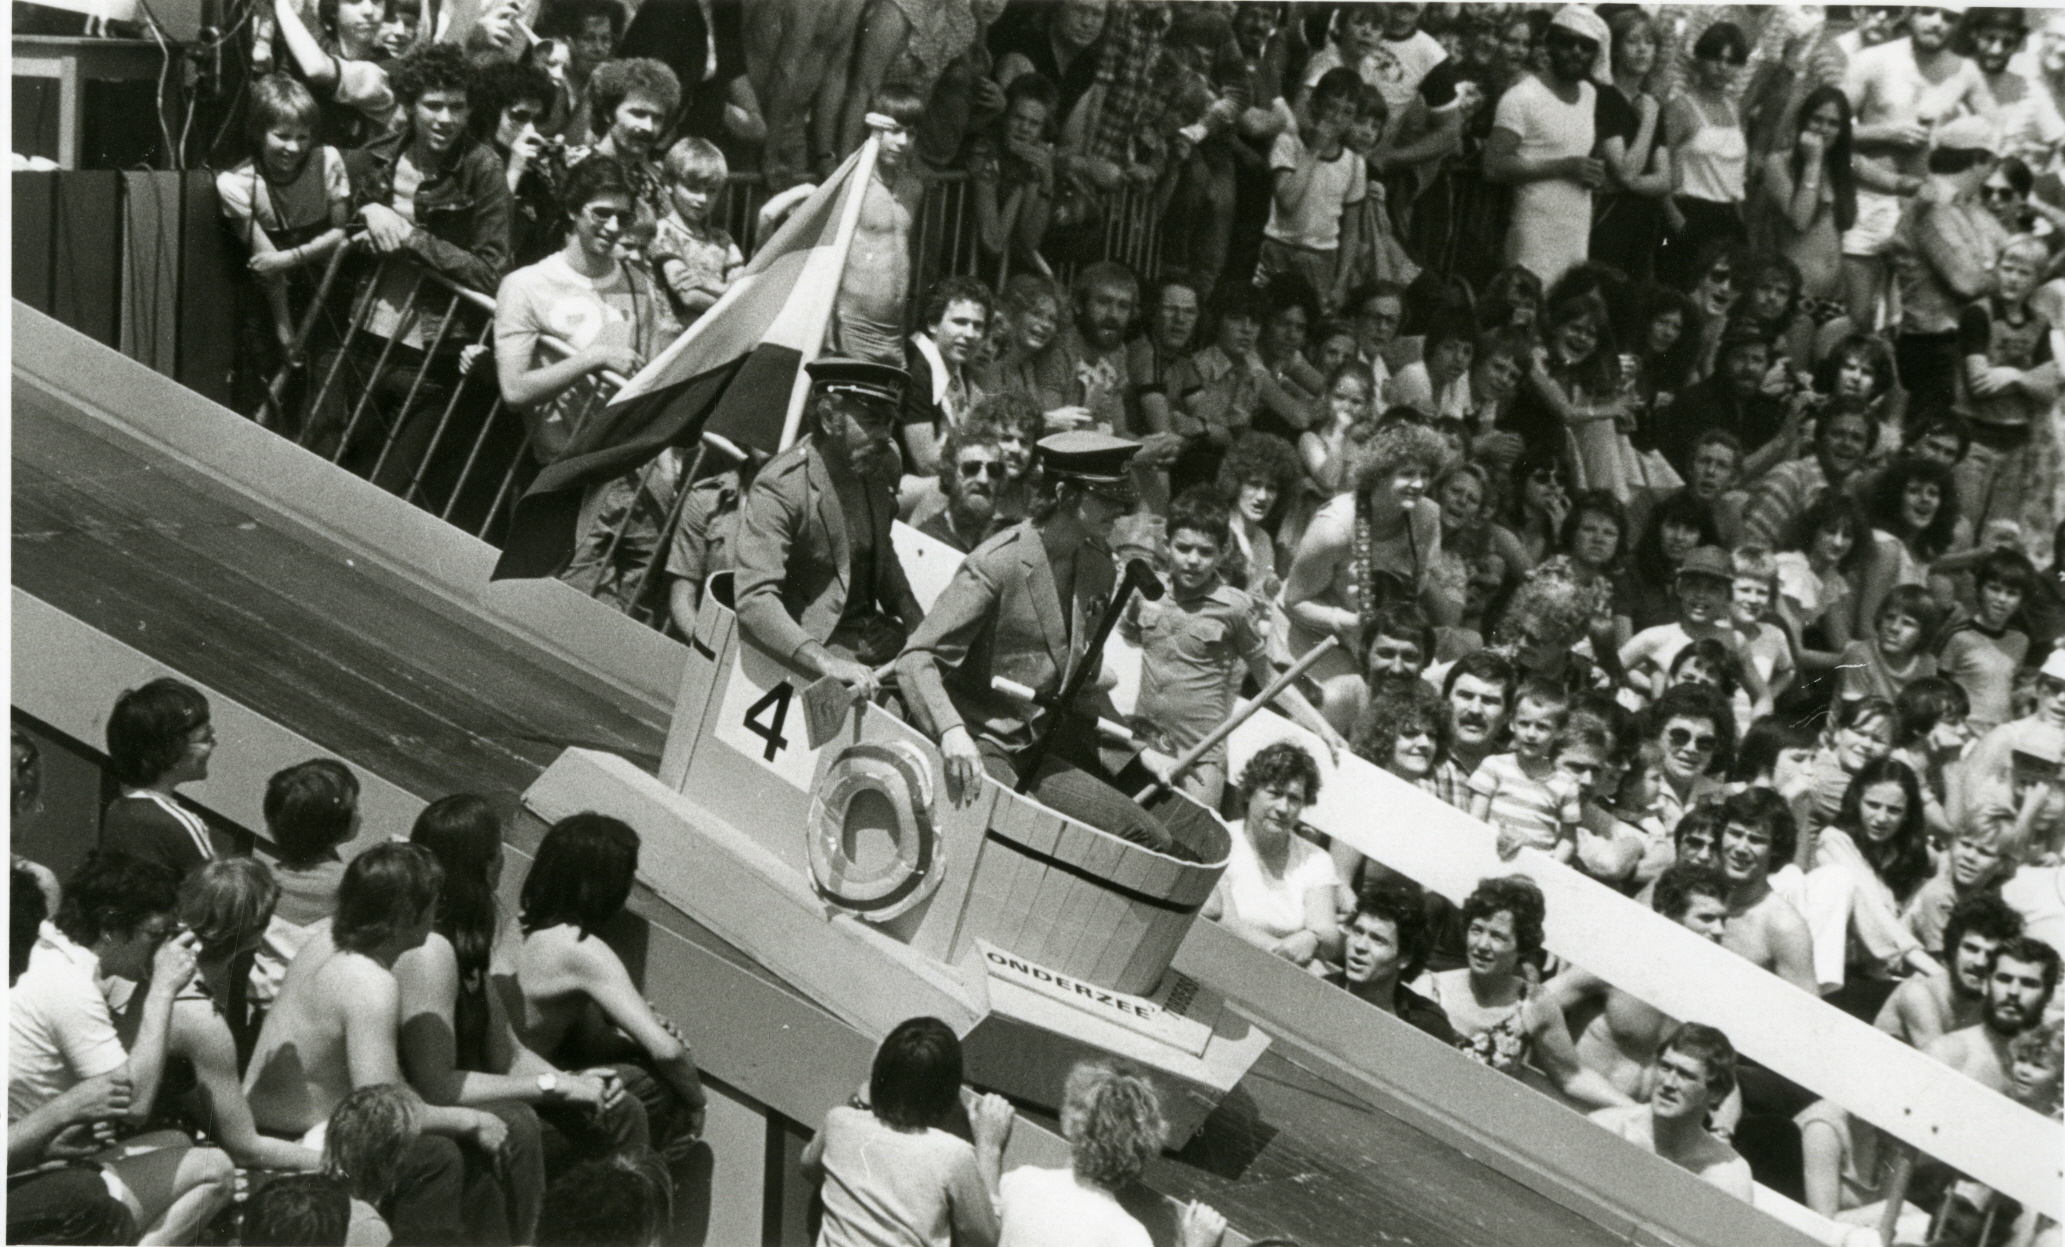 Zwart-wit foto uit 1979 van tobbedansen evenement. Veel toeschouwers en ronde tobbe met vlag en startnummer